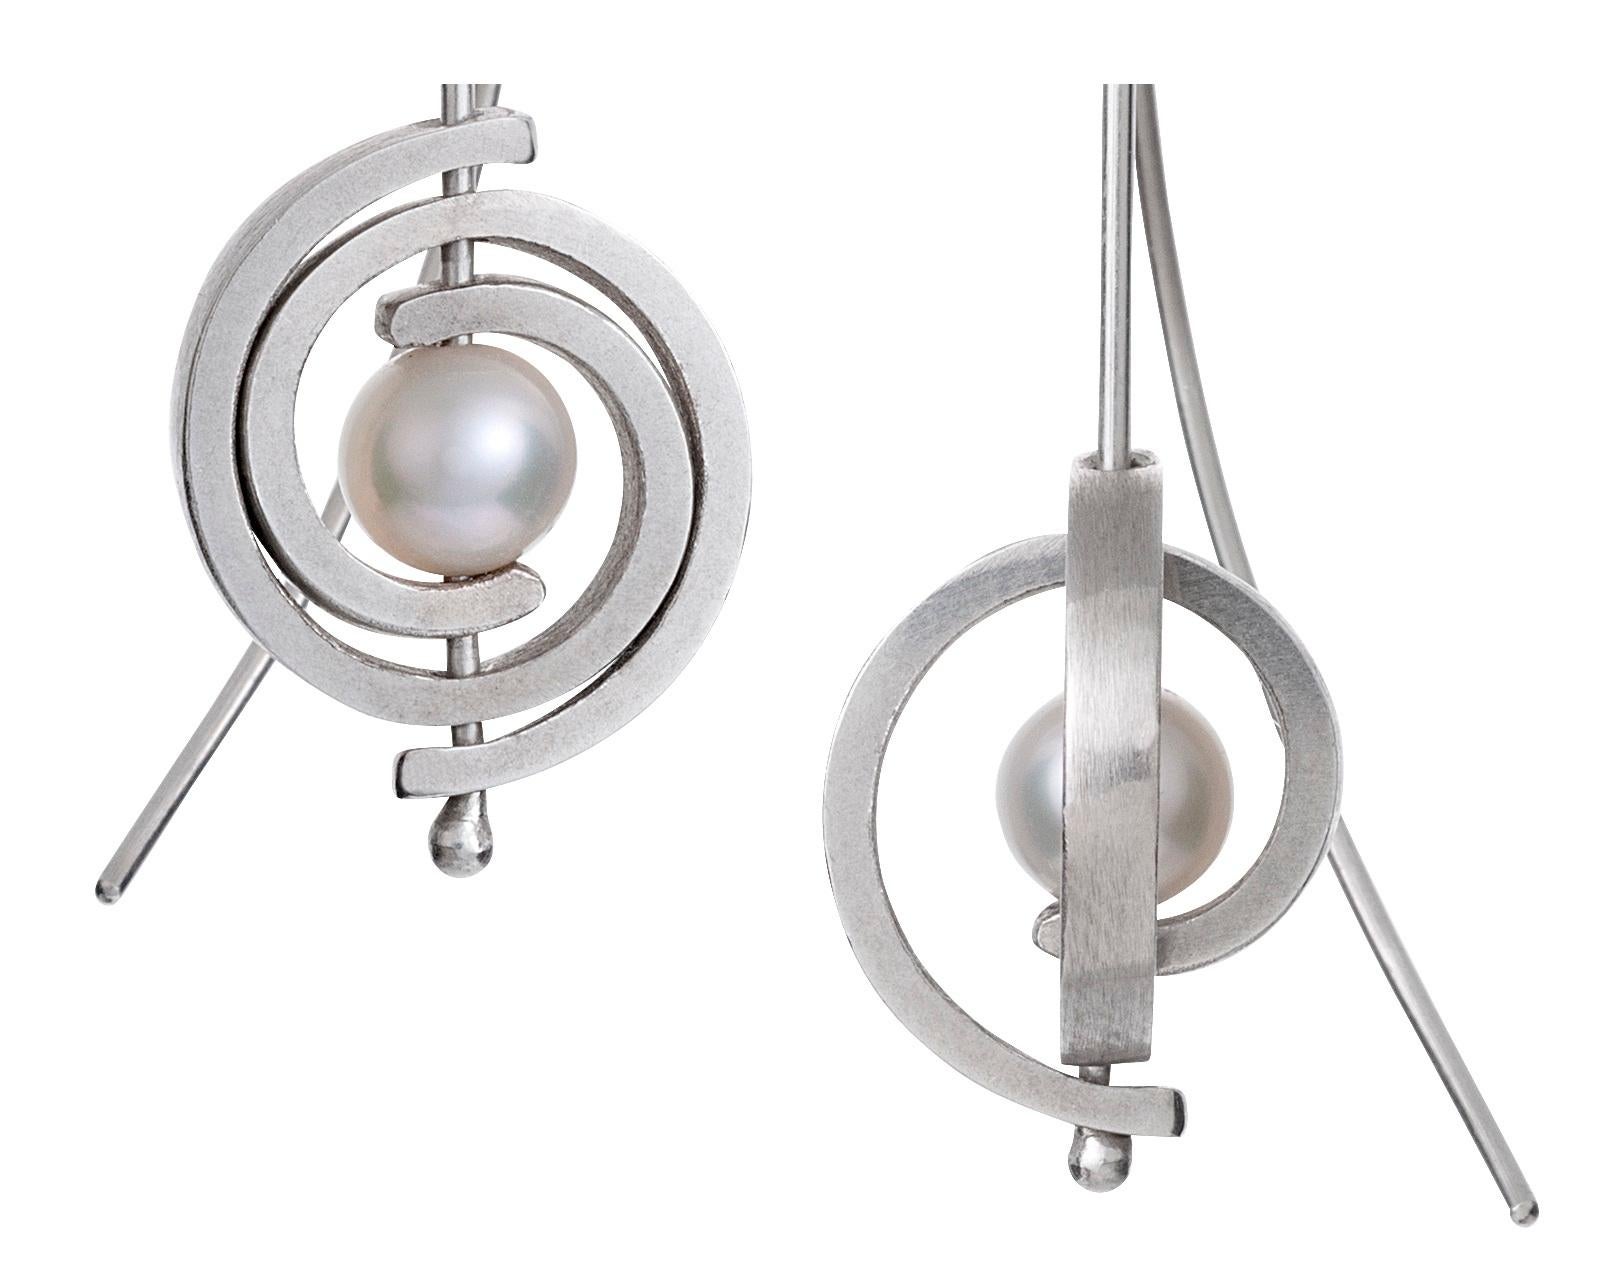 Die Petite Spiral Dangle Earrings aus den Orbit-Kollektionen sind ein klassischer Ohrring.  Sie sind wie kleine leuchtende Planeten mit Ringen. Die Ohrringe baumeln 1,5